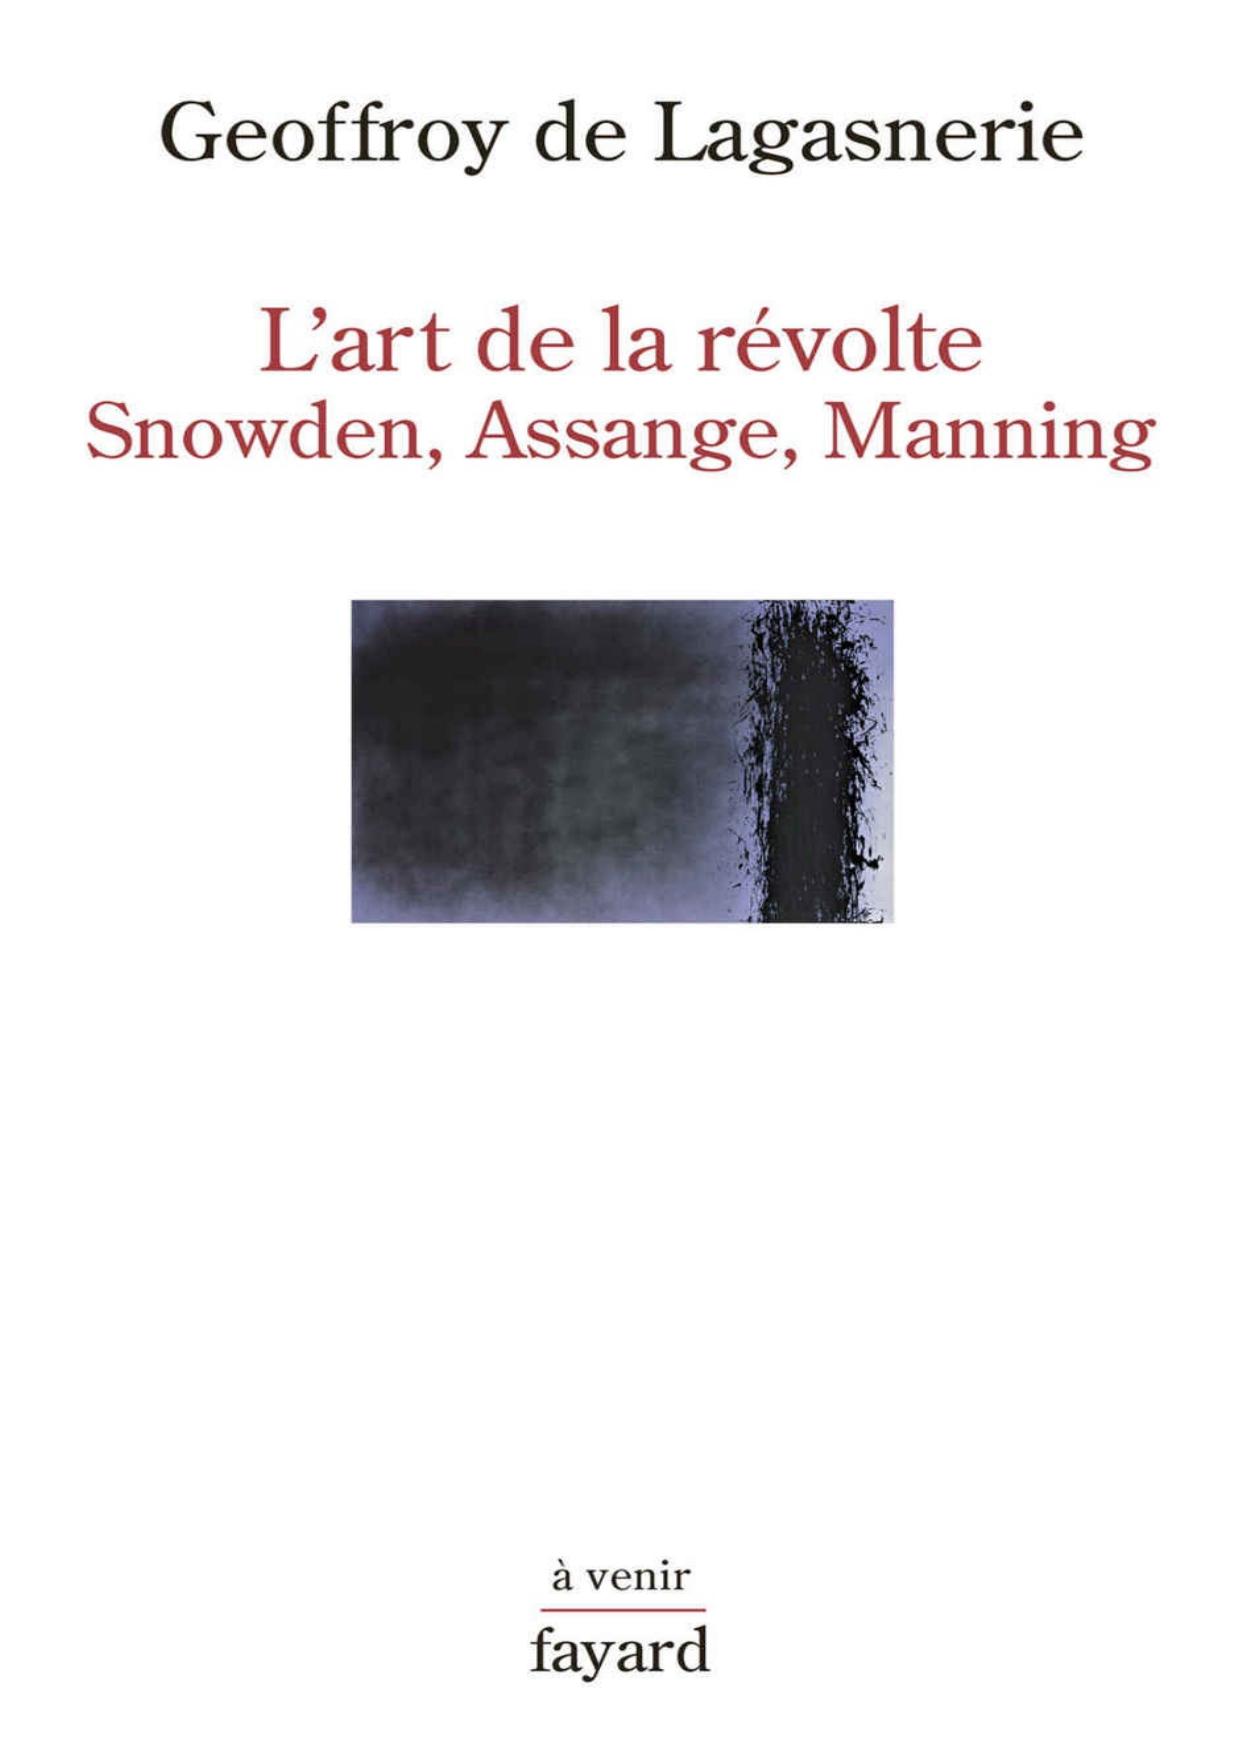 L'art de la révolte: Snowden, Assange, Manning